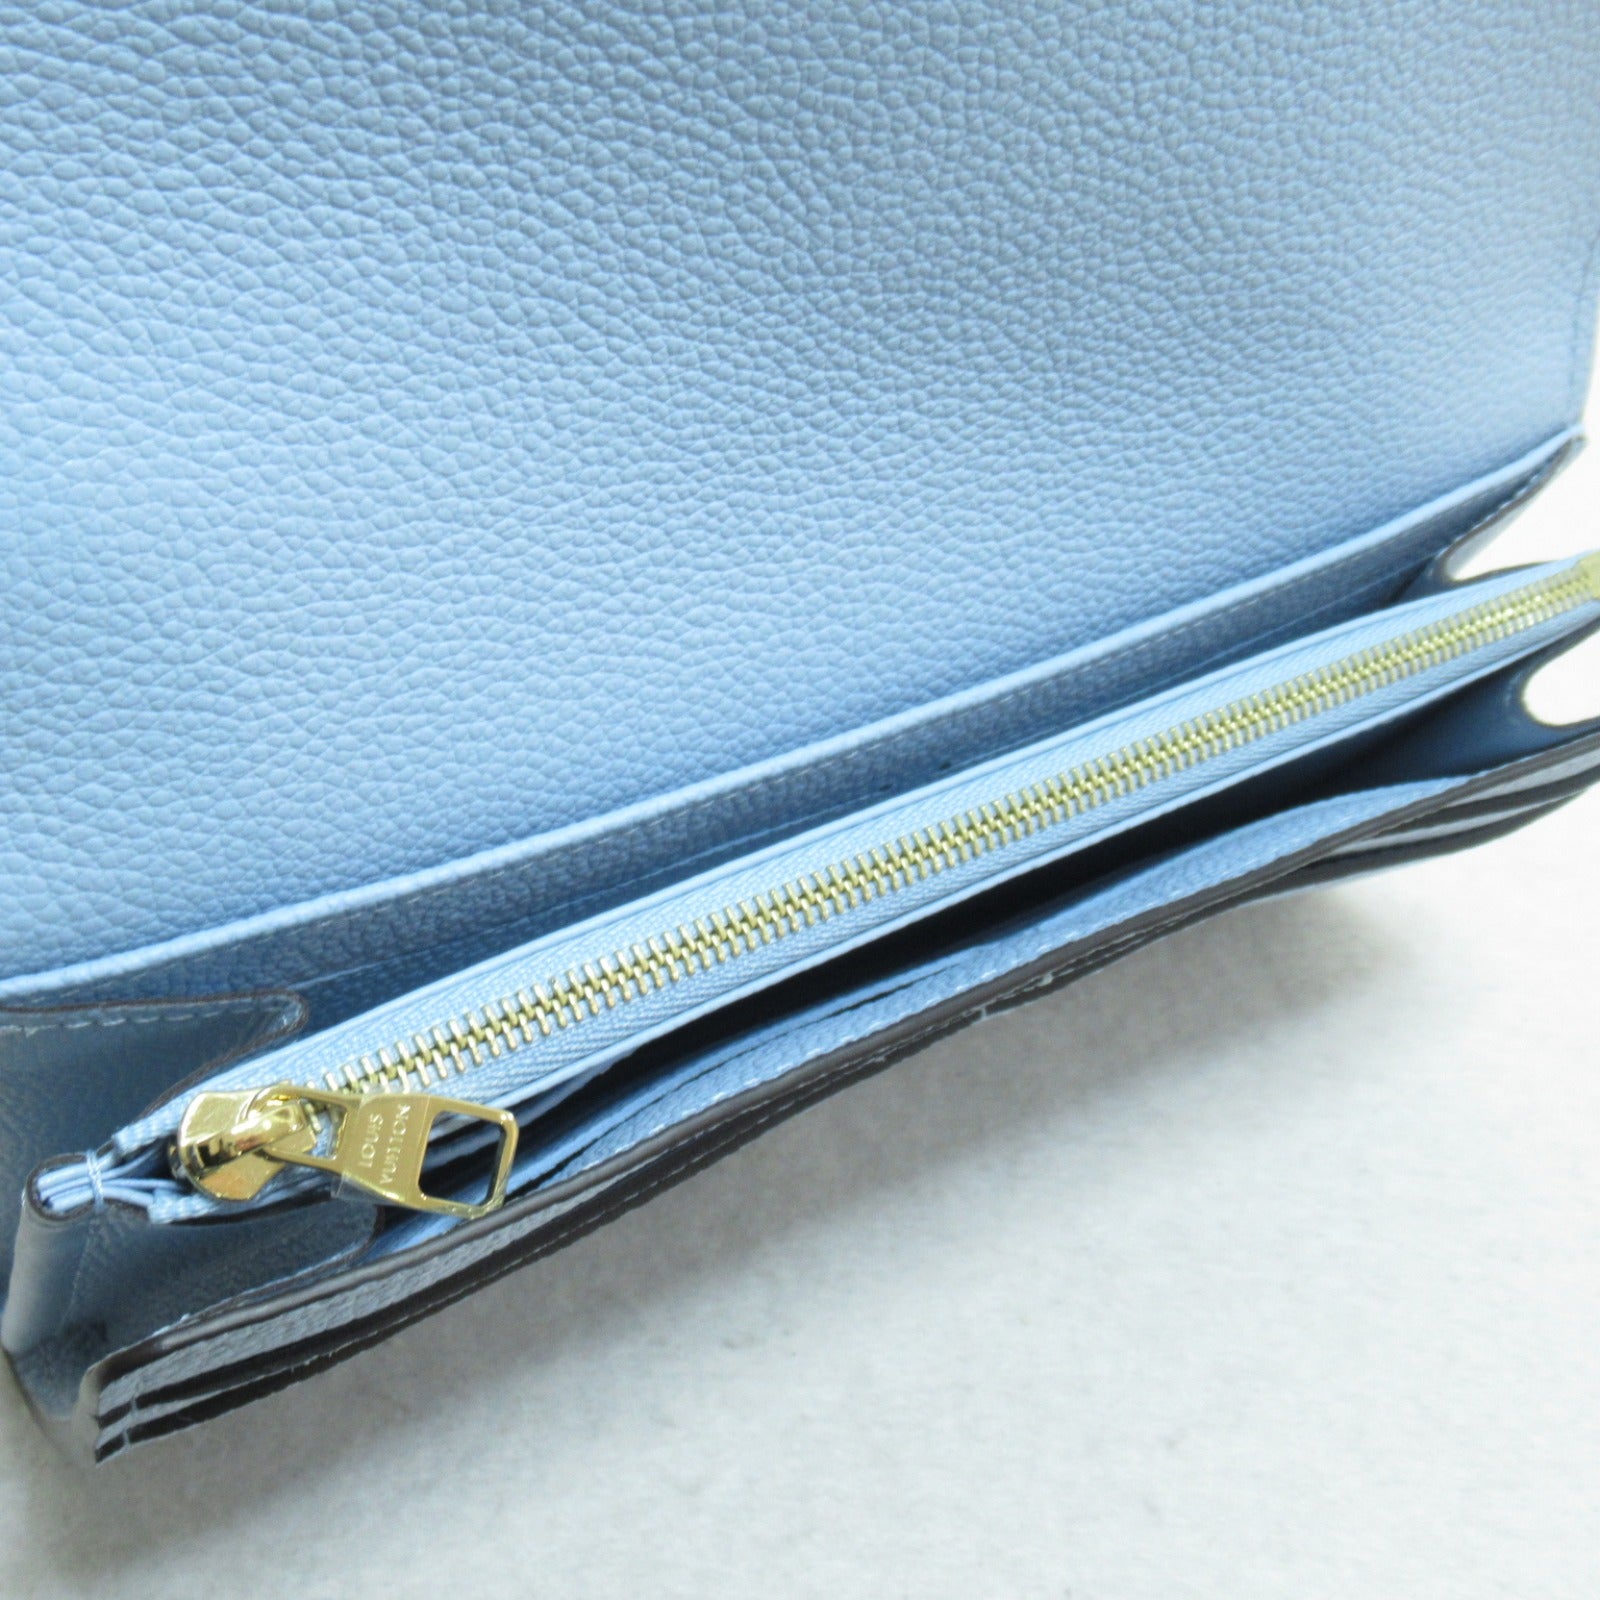 Louis Vuitton Louis Vuitton Portefolio Sarah Round Long Wallet Wallet Leather Monogram Emplant  Blue M82048